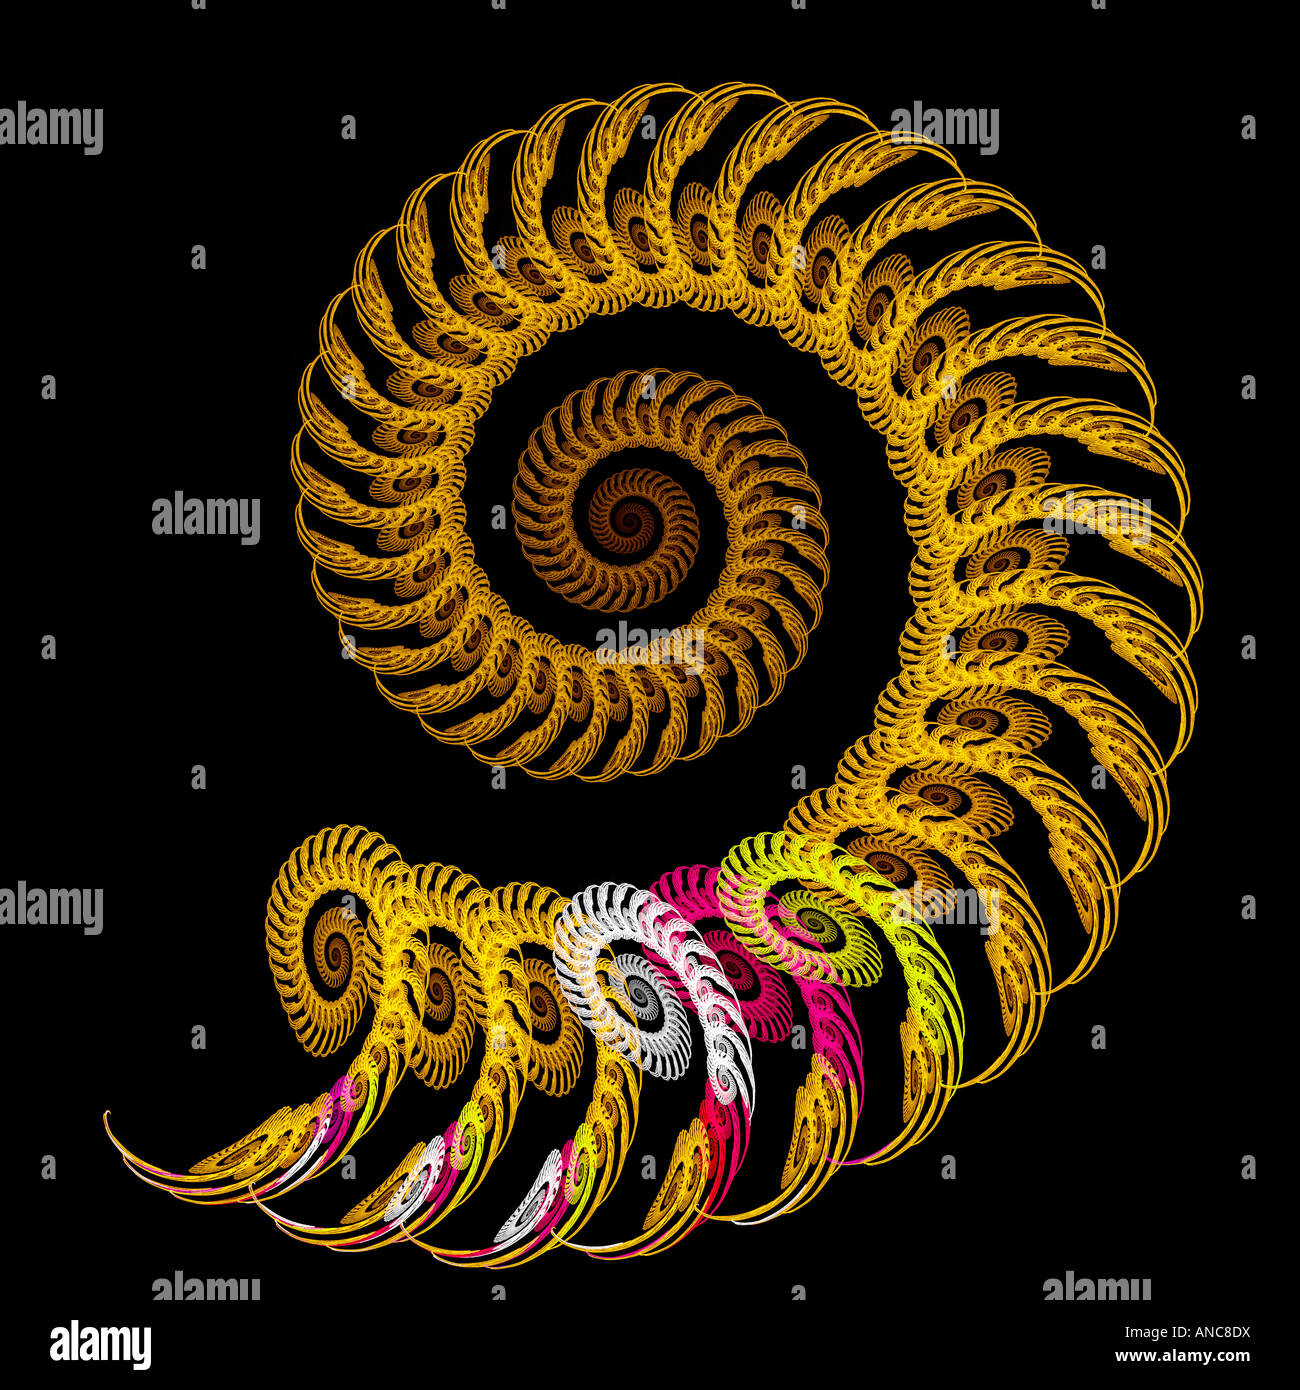 Résumé d'une image fractale spirale spirale Banque D'Images